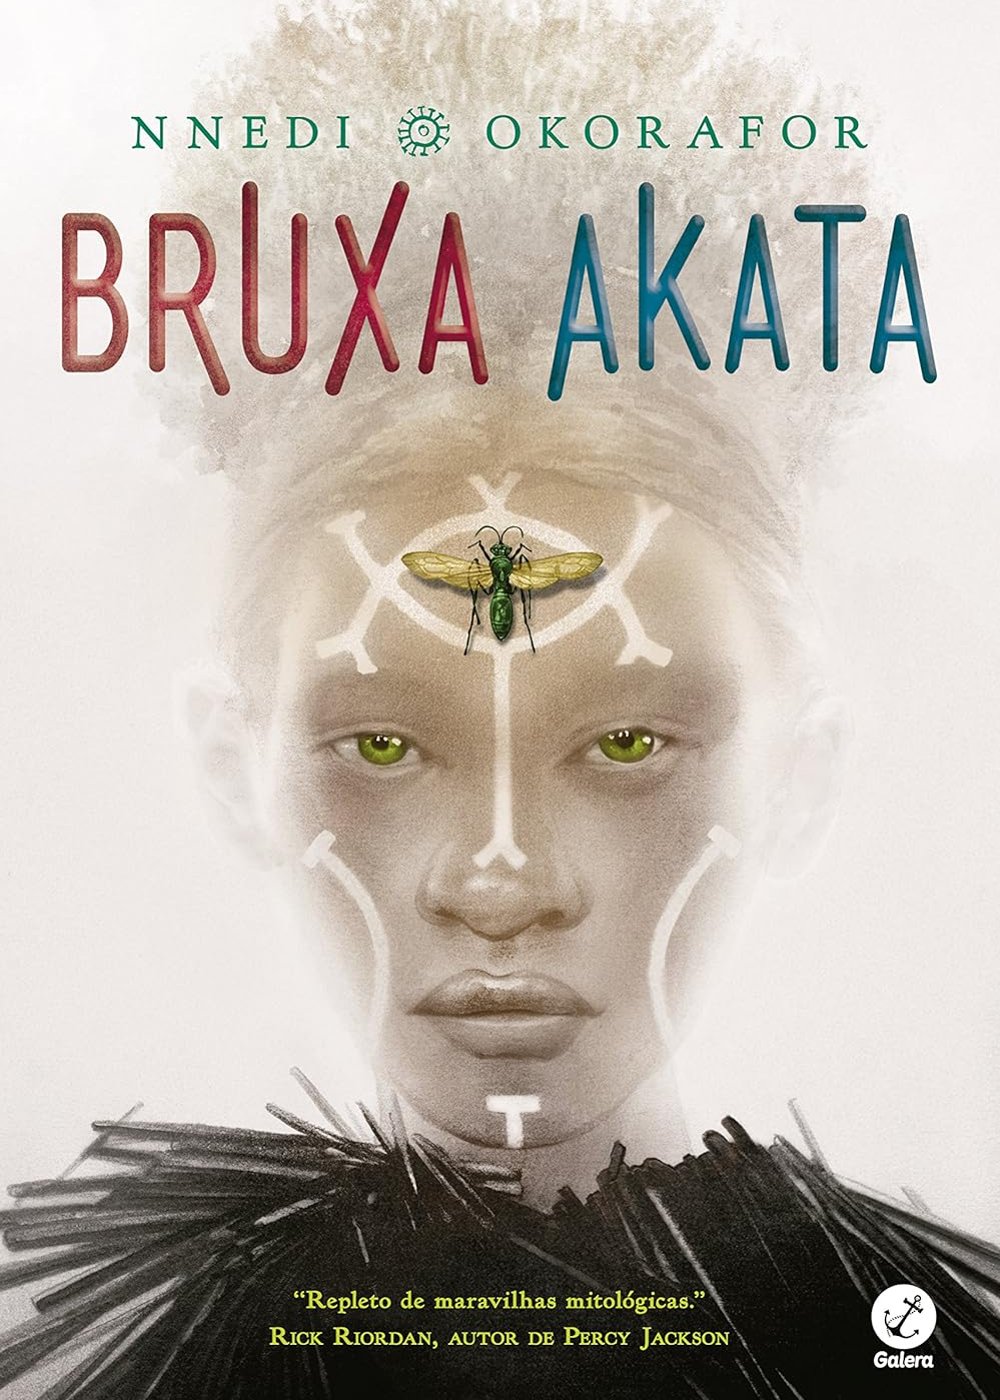 Bruxa Akata - livro - Melhores livros de 2023 - fantasia - leitura - https://stealthelook.com.br